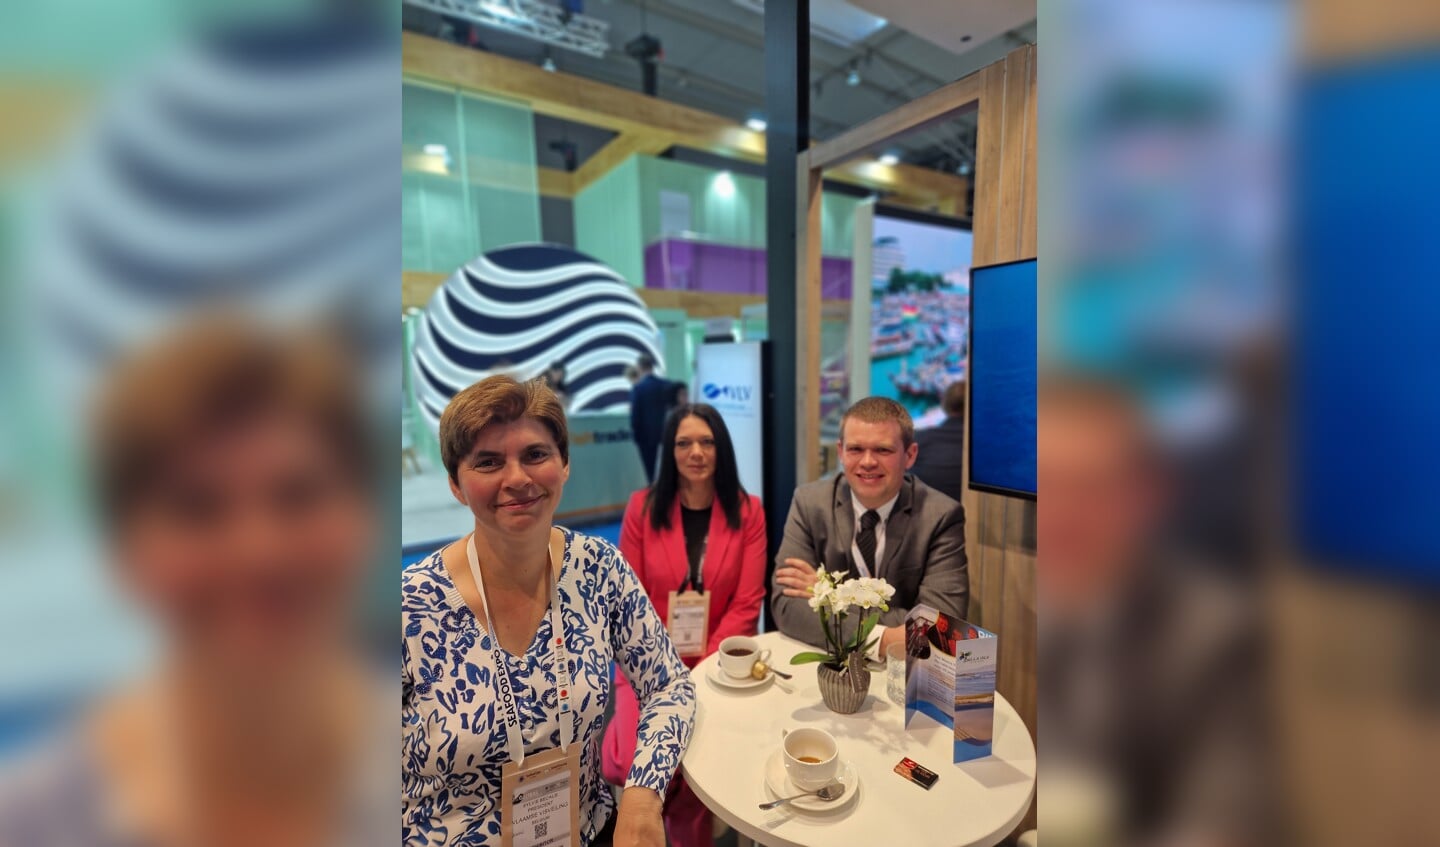 H Vooraan CEO Sylvie Becaus van de Vlaamse Visveiling, met daarachter business development manager Malou Soetaerts en directeur Tom Premereur.